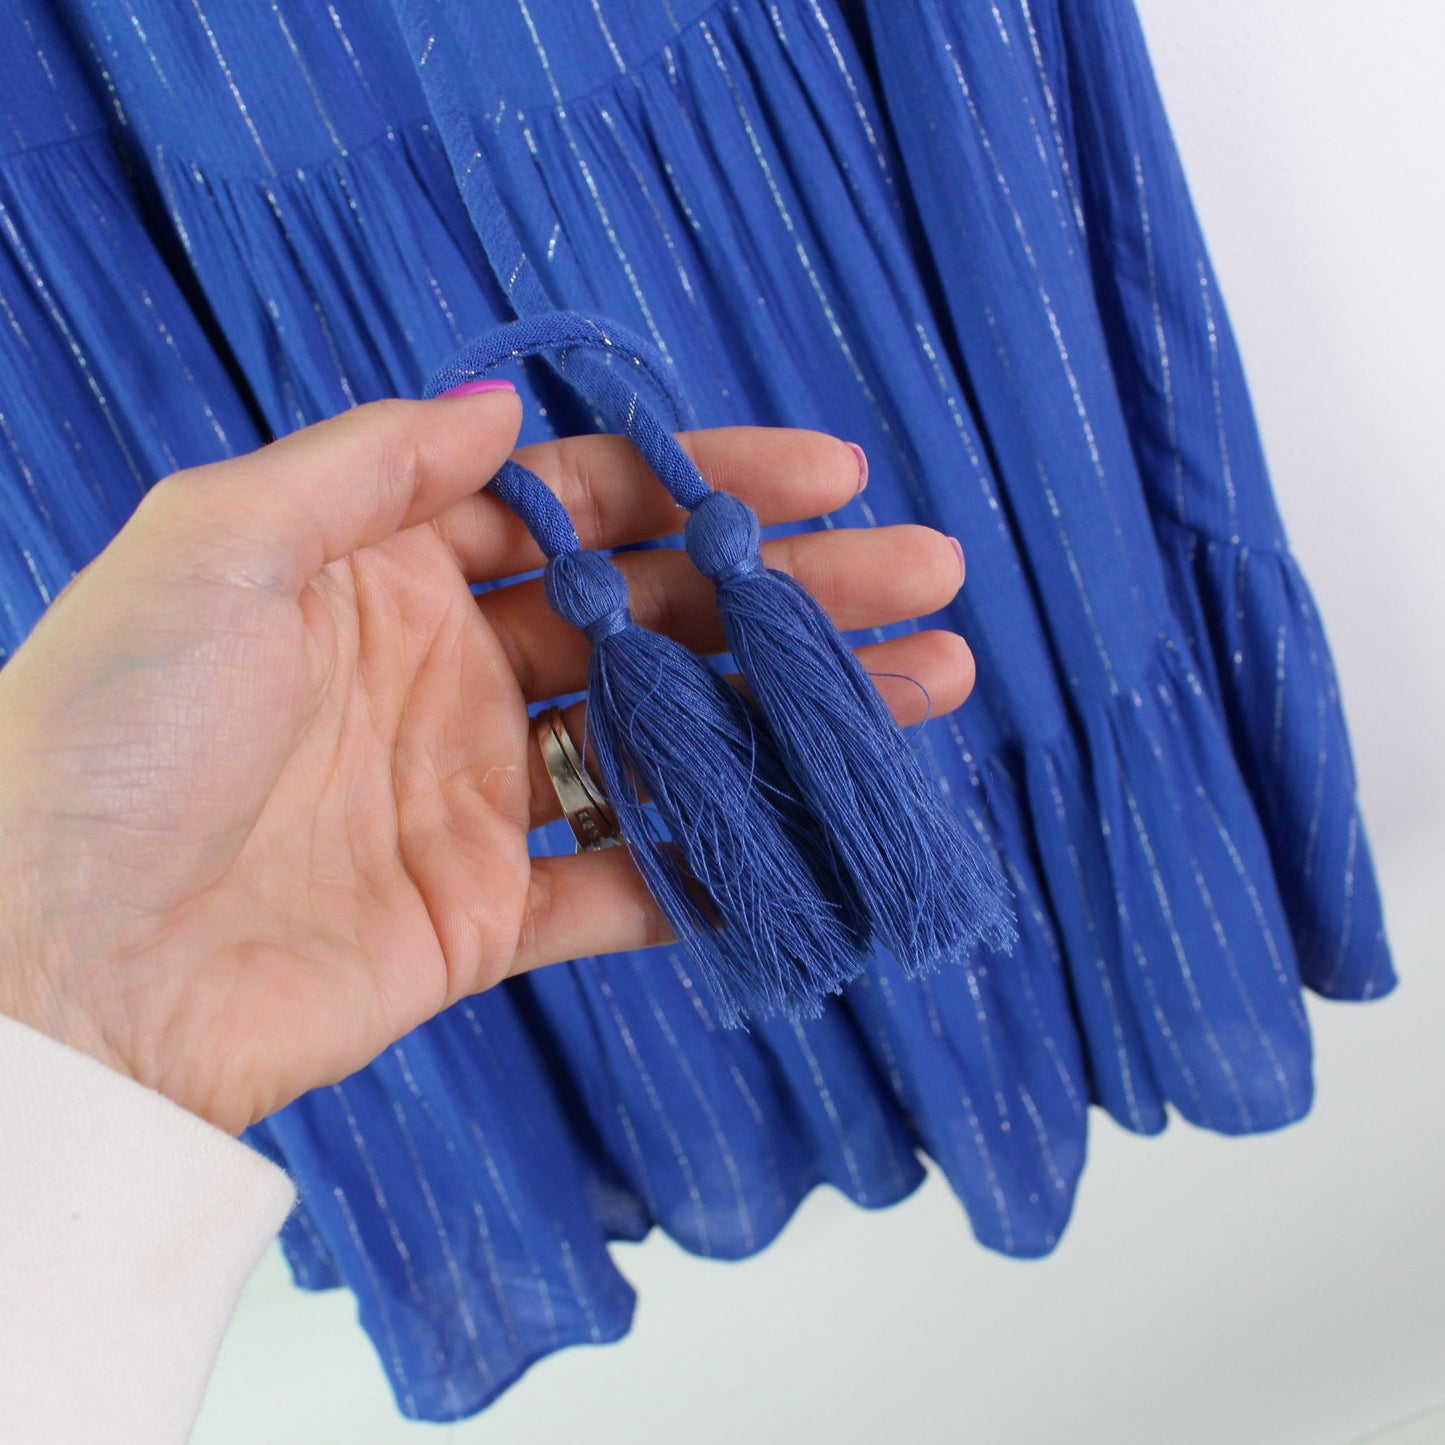 Aqua Metallic Stripe Tiered Mini Dress Cobalt XS